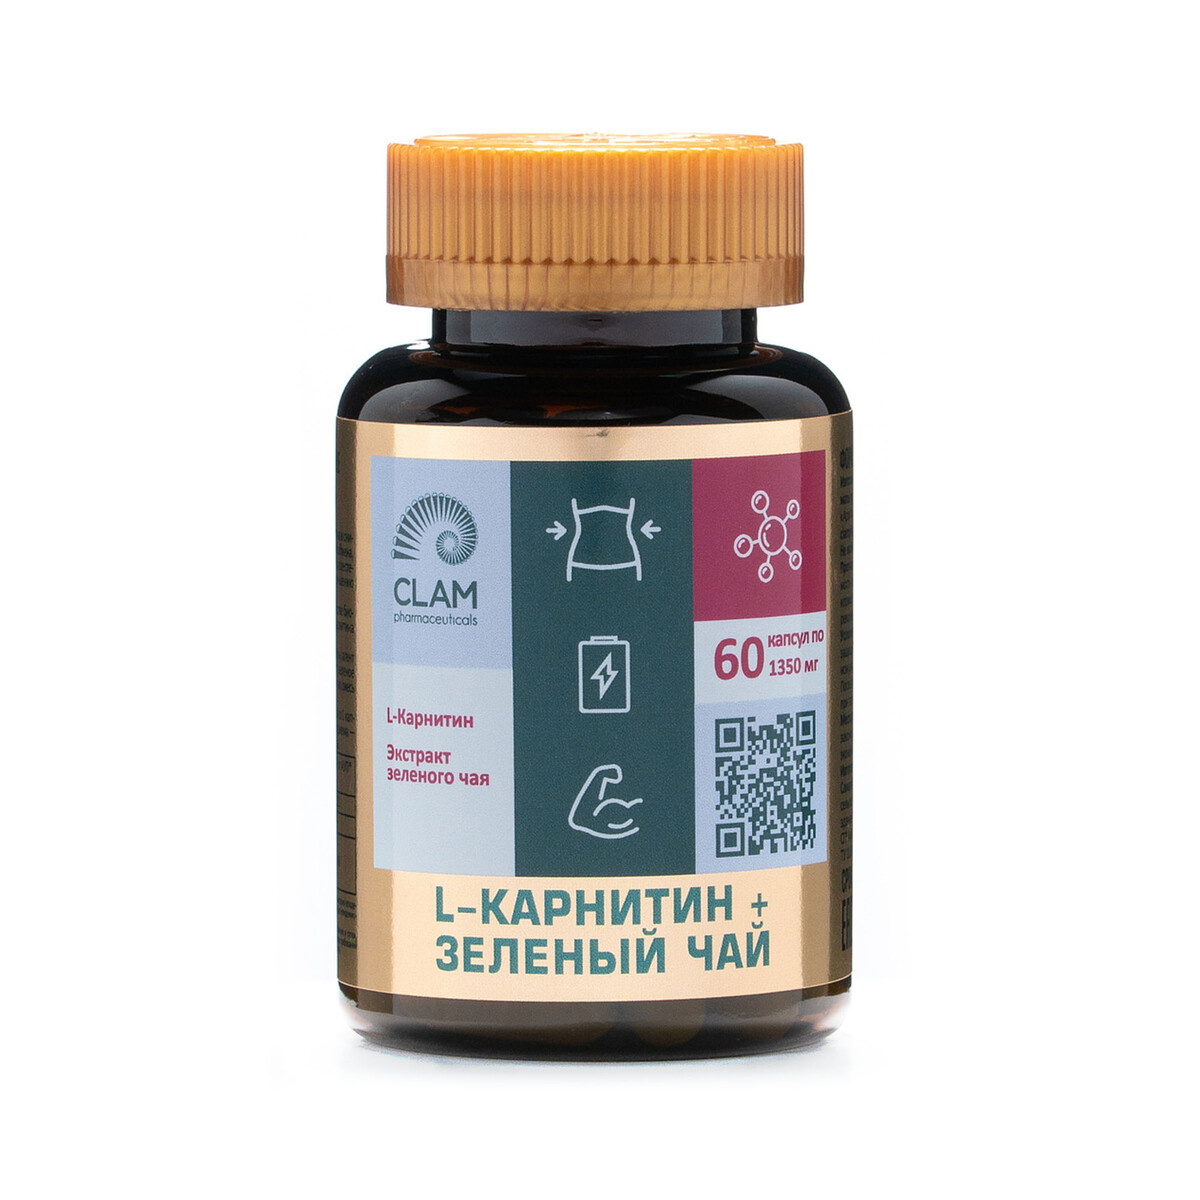 L-карнитин + зеленый чай - нормализация веса - для похудения и повышения энергии - 60 капсул l карнитин нормализация веса для похудения повышения уровня энергии 60 капсул